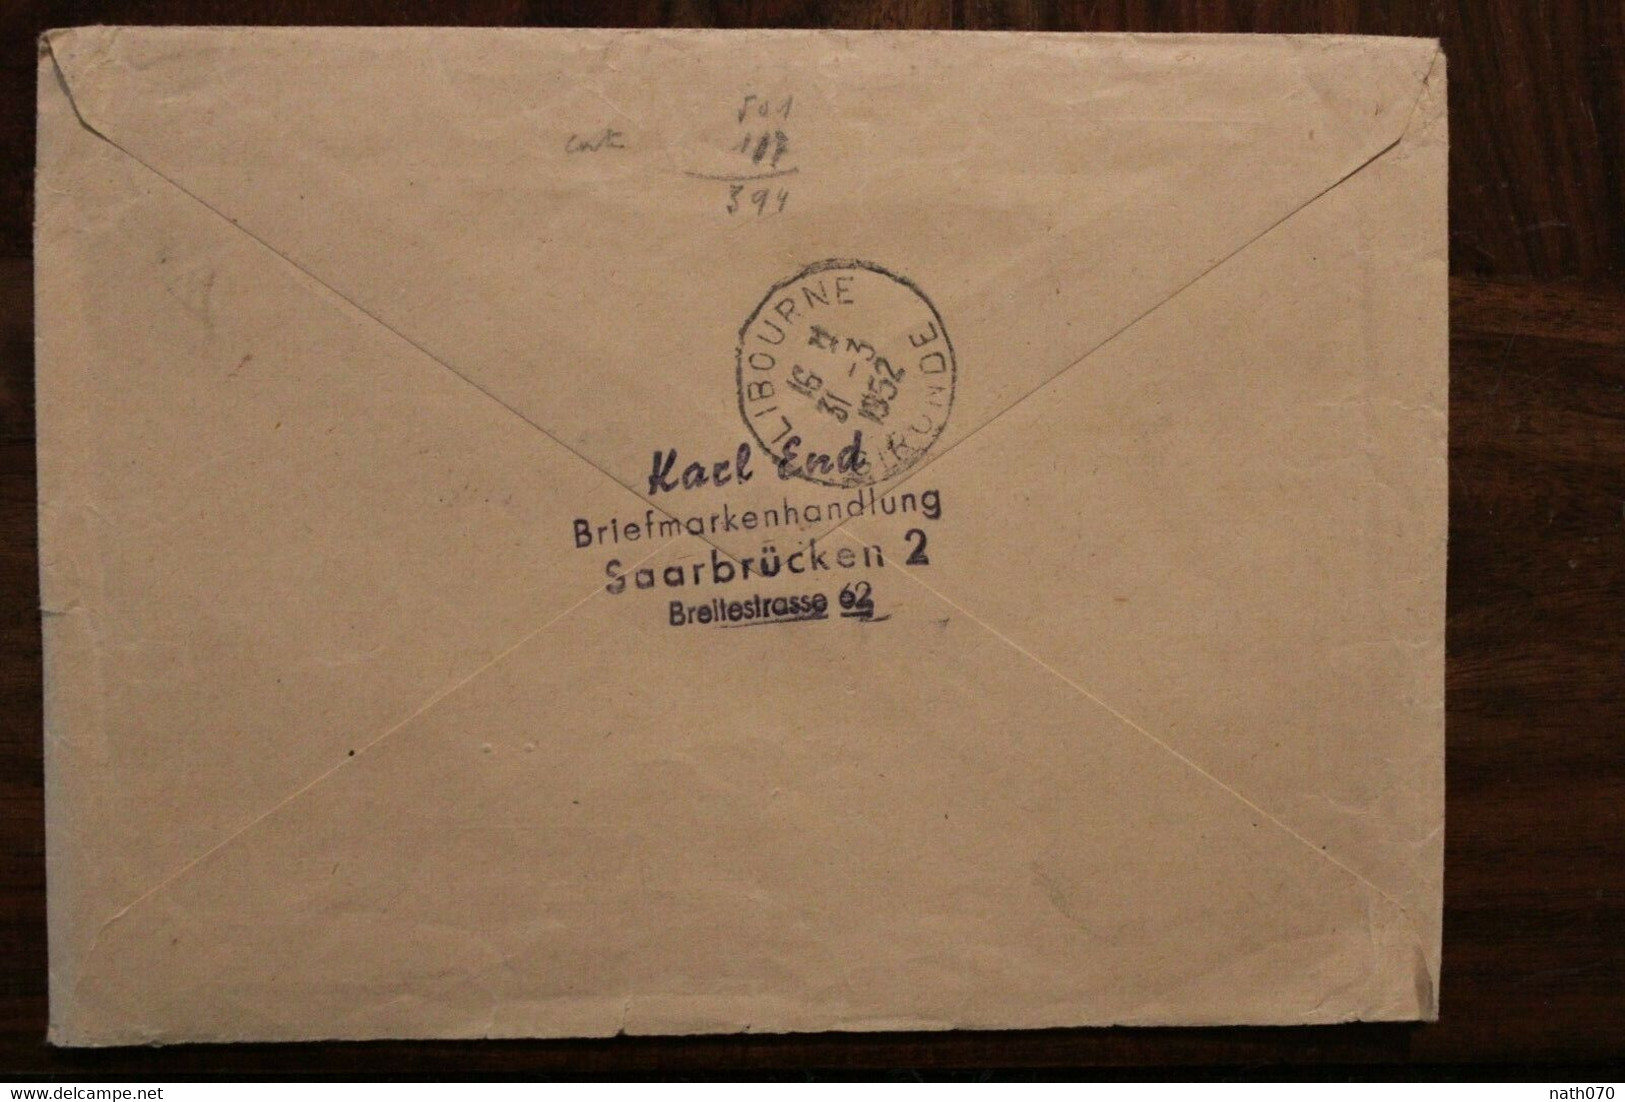 1952 IMOSA Saar Region Letter Saarbrücken Cover Saar France Registered Letter Libourne - Cartas & Documentos